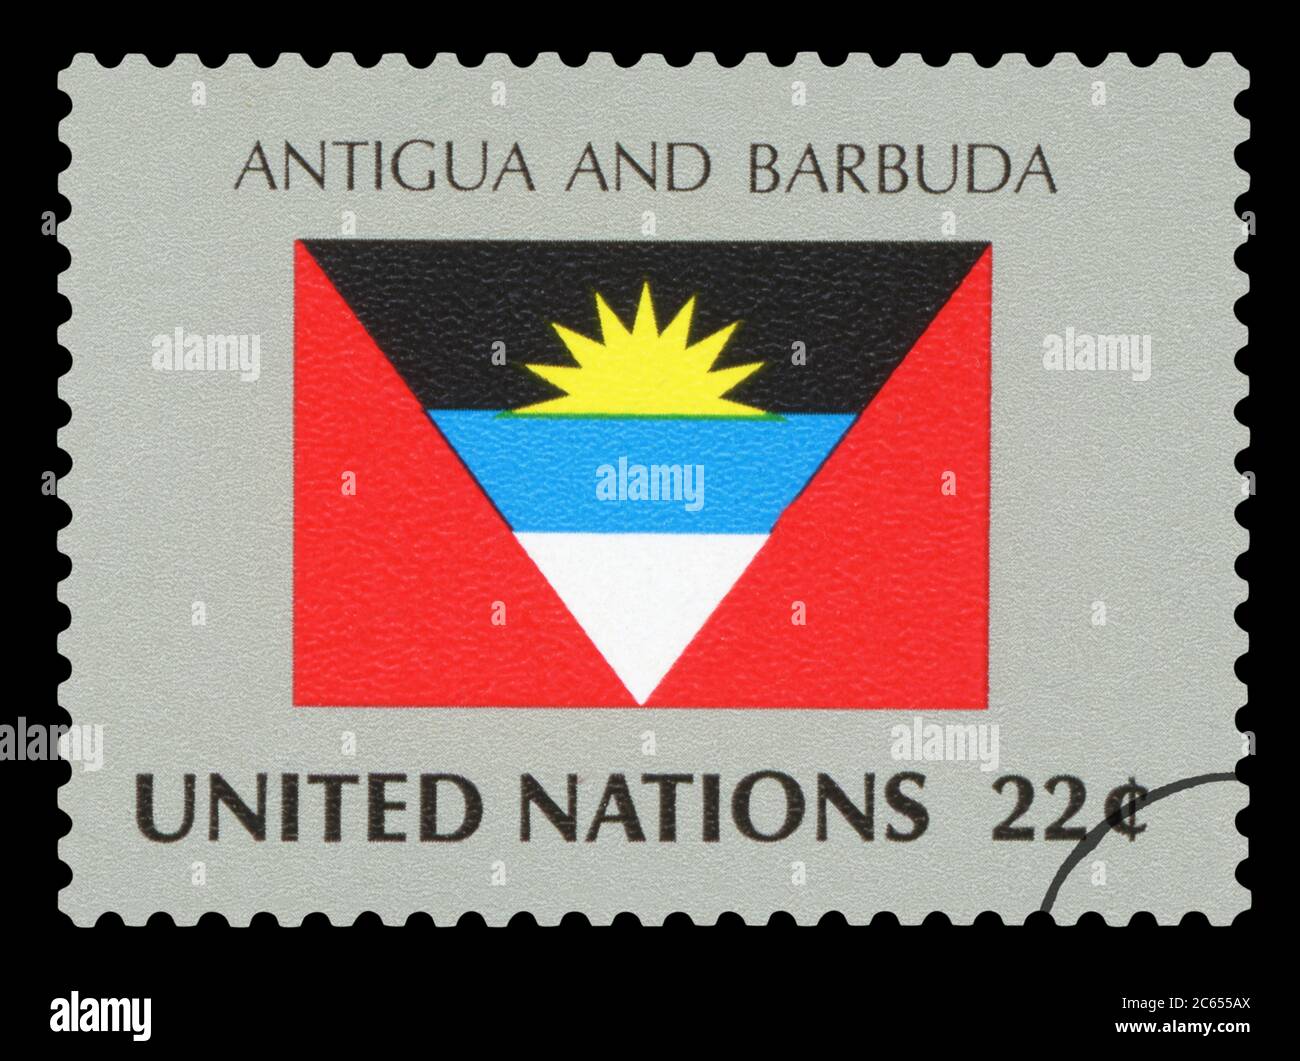 NTIGUA ET BARBUDA - timbre de poste du drapeau national D'ANTIGUA-ET-BARBUDA, série des Nations Unies, vers 1984. Banque D'Images